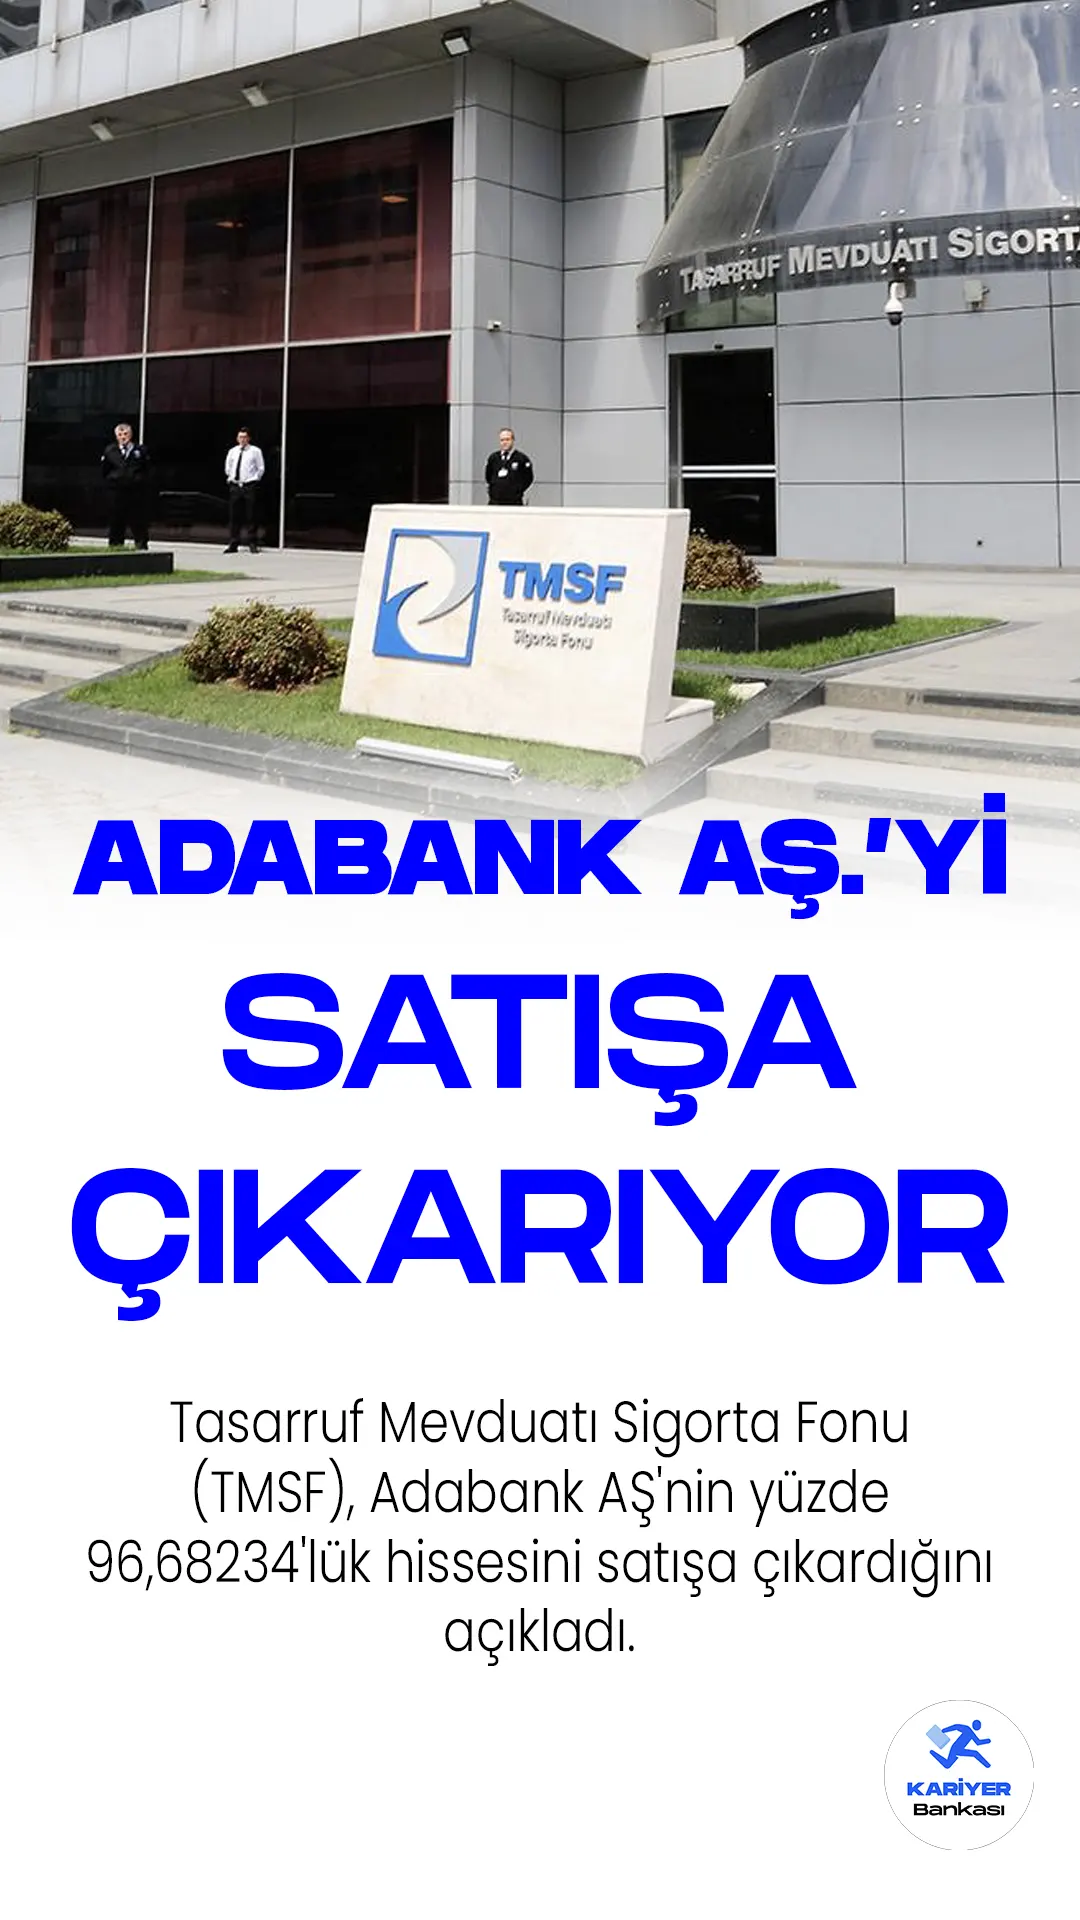 Tasarruf Mevduatı Sigorta Fonu (TMSF), Adabank AŞ'nin yüzde 96,68234'lük hissesini satışa çıkardığını açıkladı. İhale ilanı, Resmi Gazete'de yayımlanarak resmiyet kazandı.